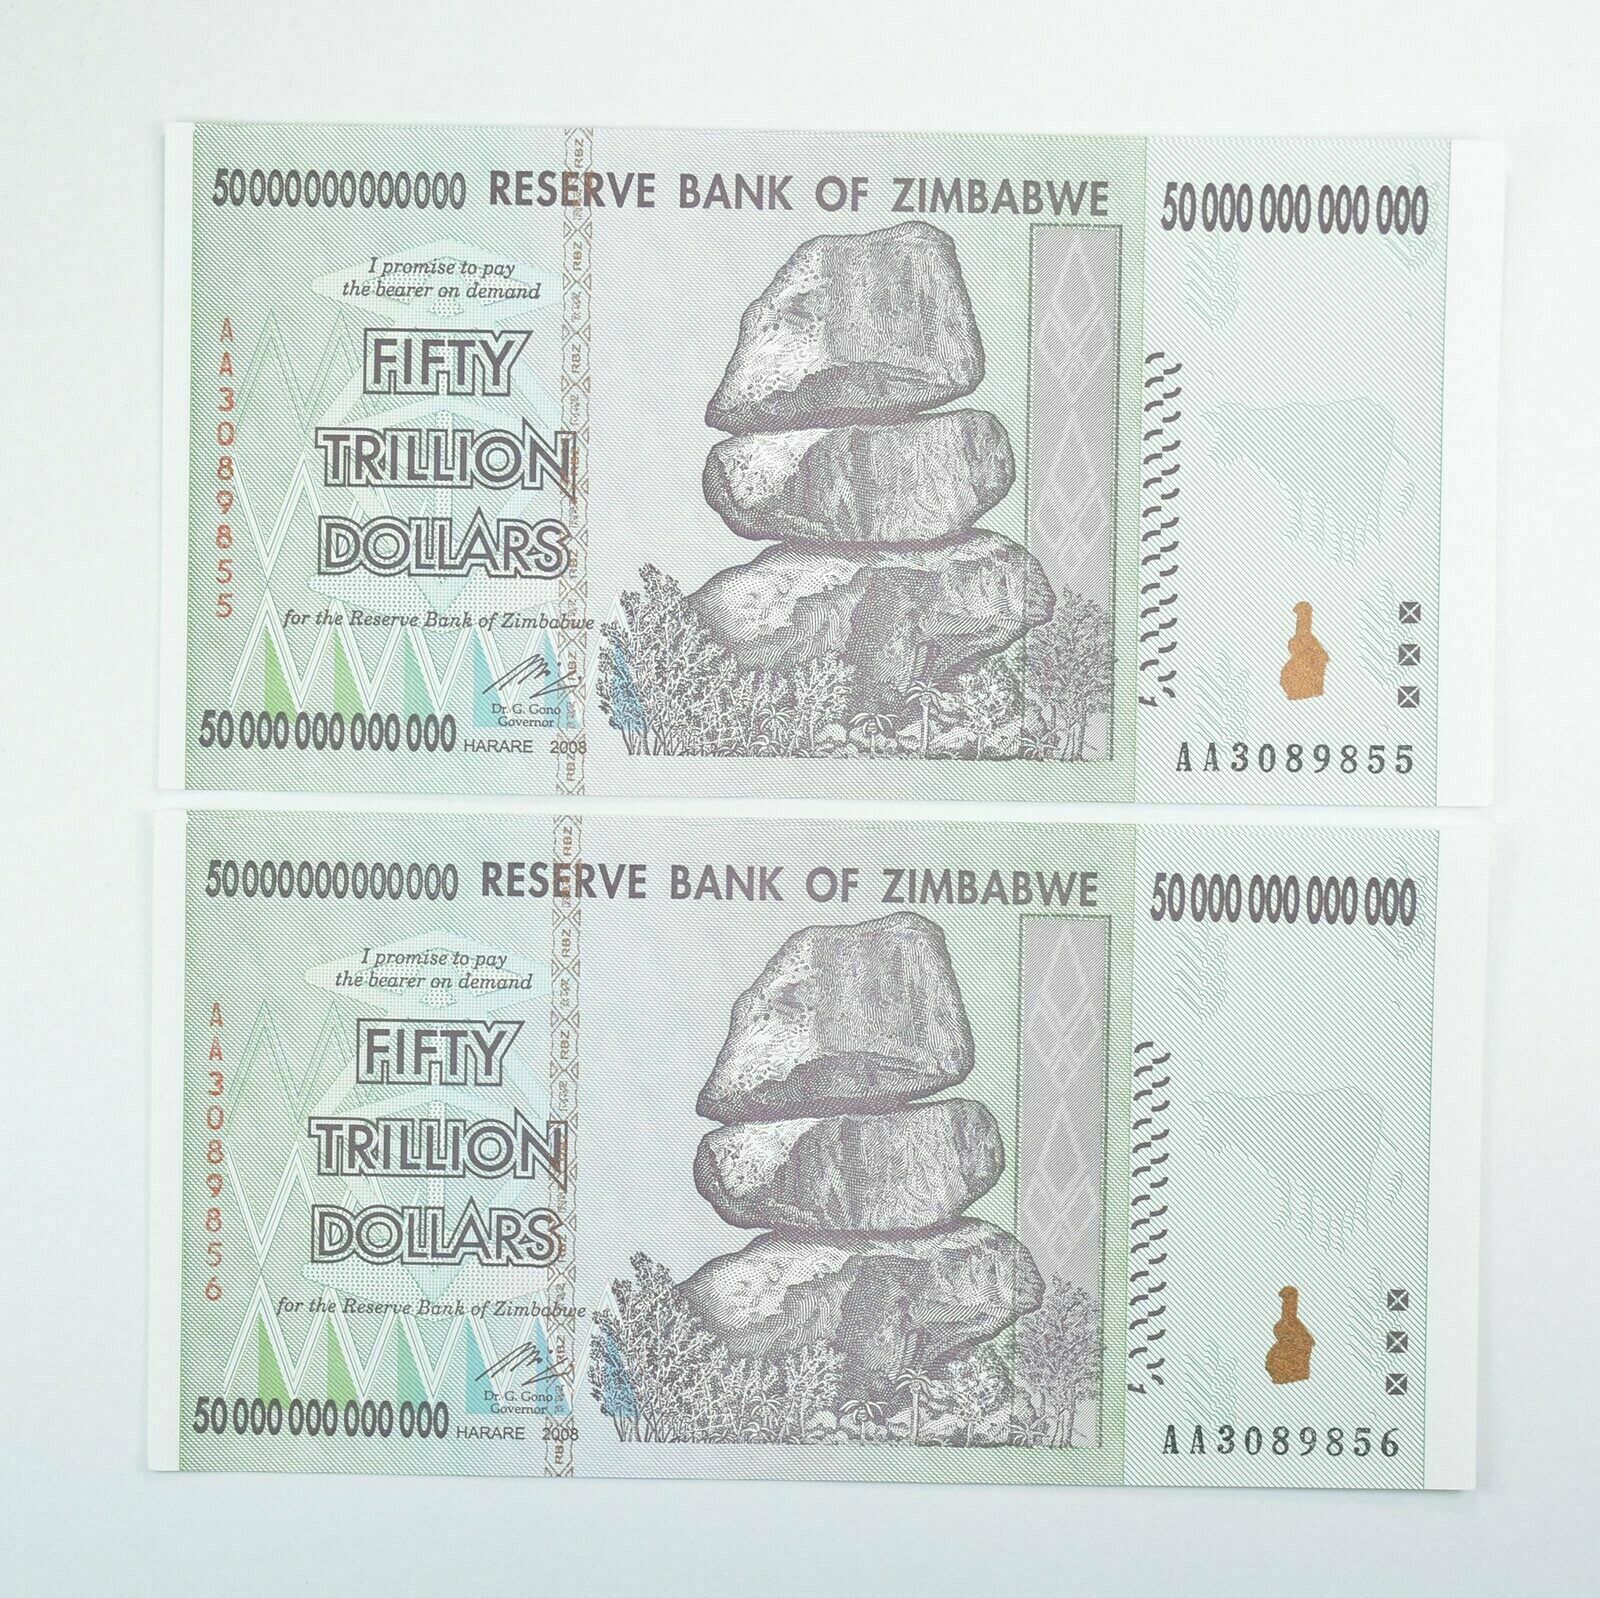 2 Consecutive 50 Trillion Dollar - Zimbabwe - Unc Notes - 2008 Authentic